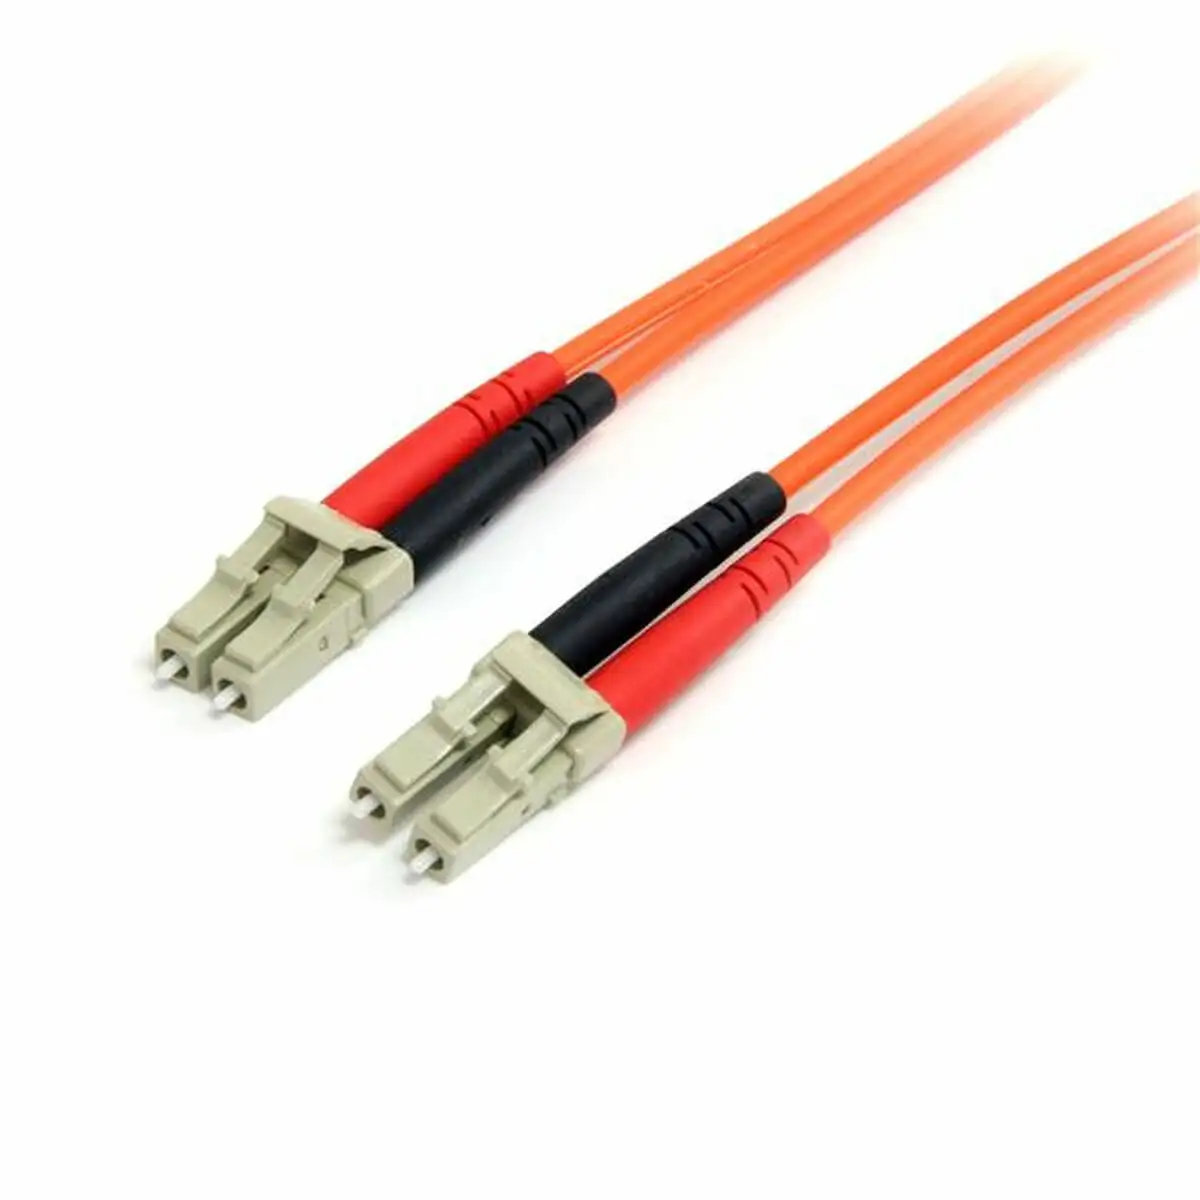 Cable a fibre optique startech fiblclc3 3 m_9414. DIAYTAR SENEGAL - Là où Chaque Achat a du Sens. Explorez notre gamme et choisissez des produits qui racontent une histoire, du traditionnel au contemporain.